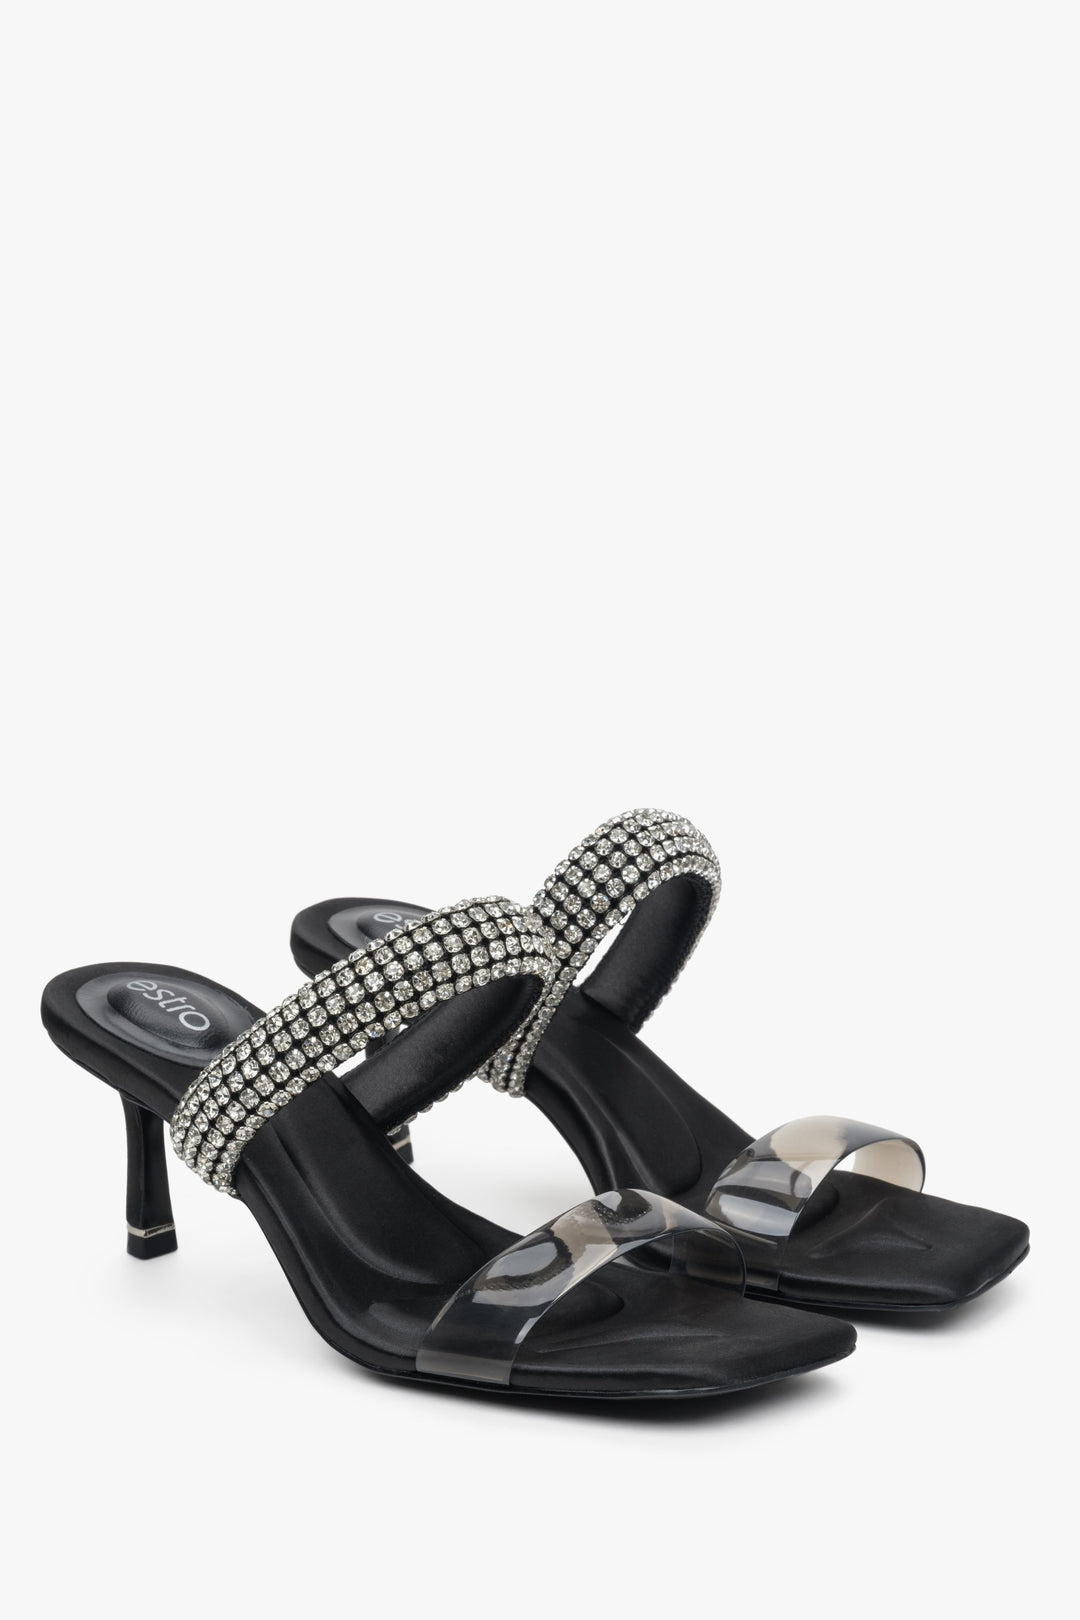 Women's black heeled mules with zirconia, Estro brand.